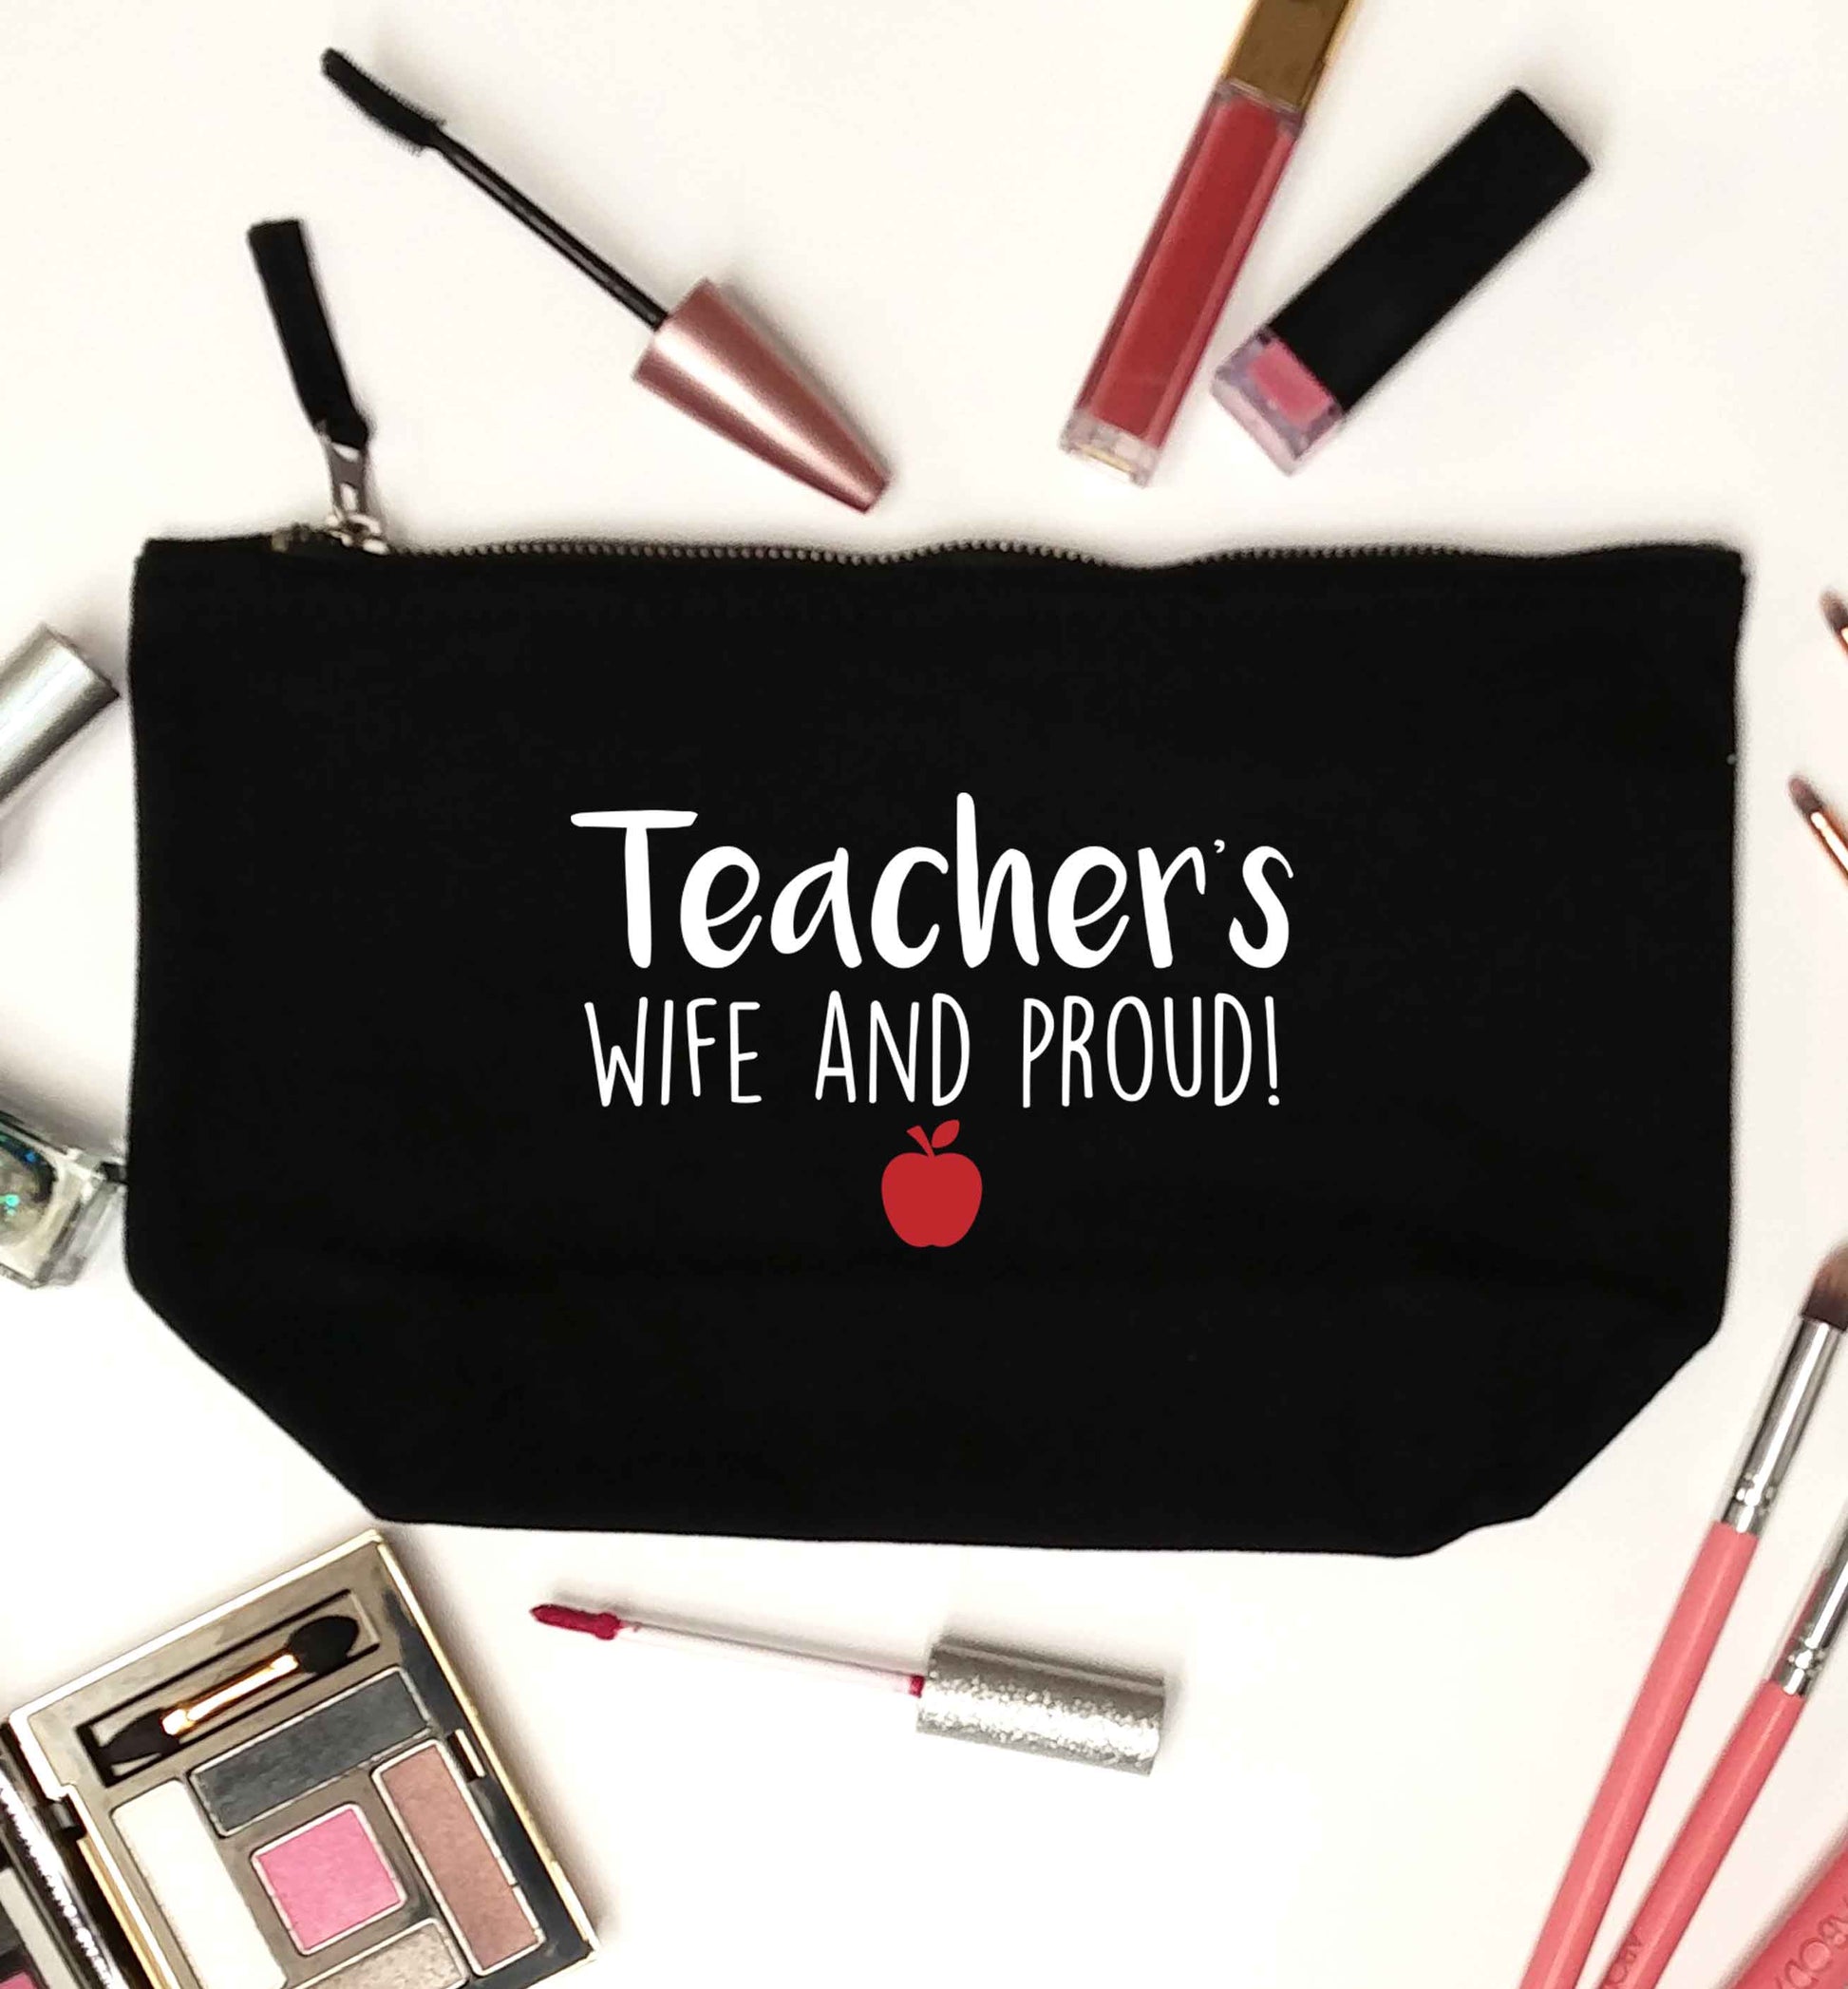 Teachers wife and proud black makeup bag